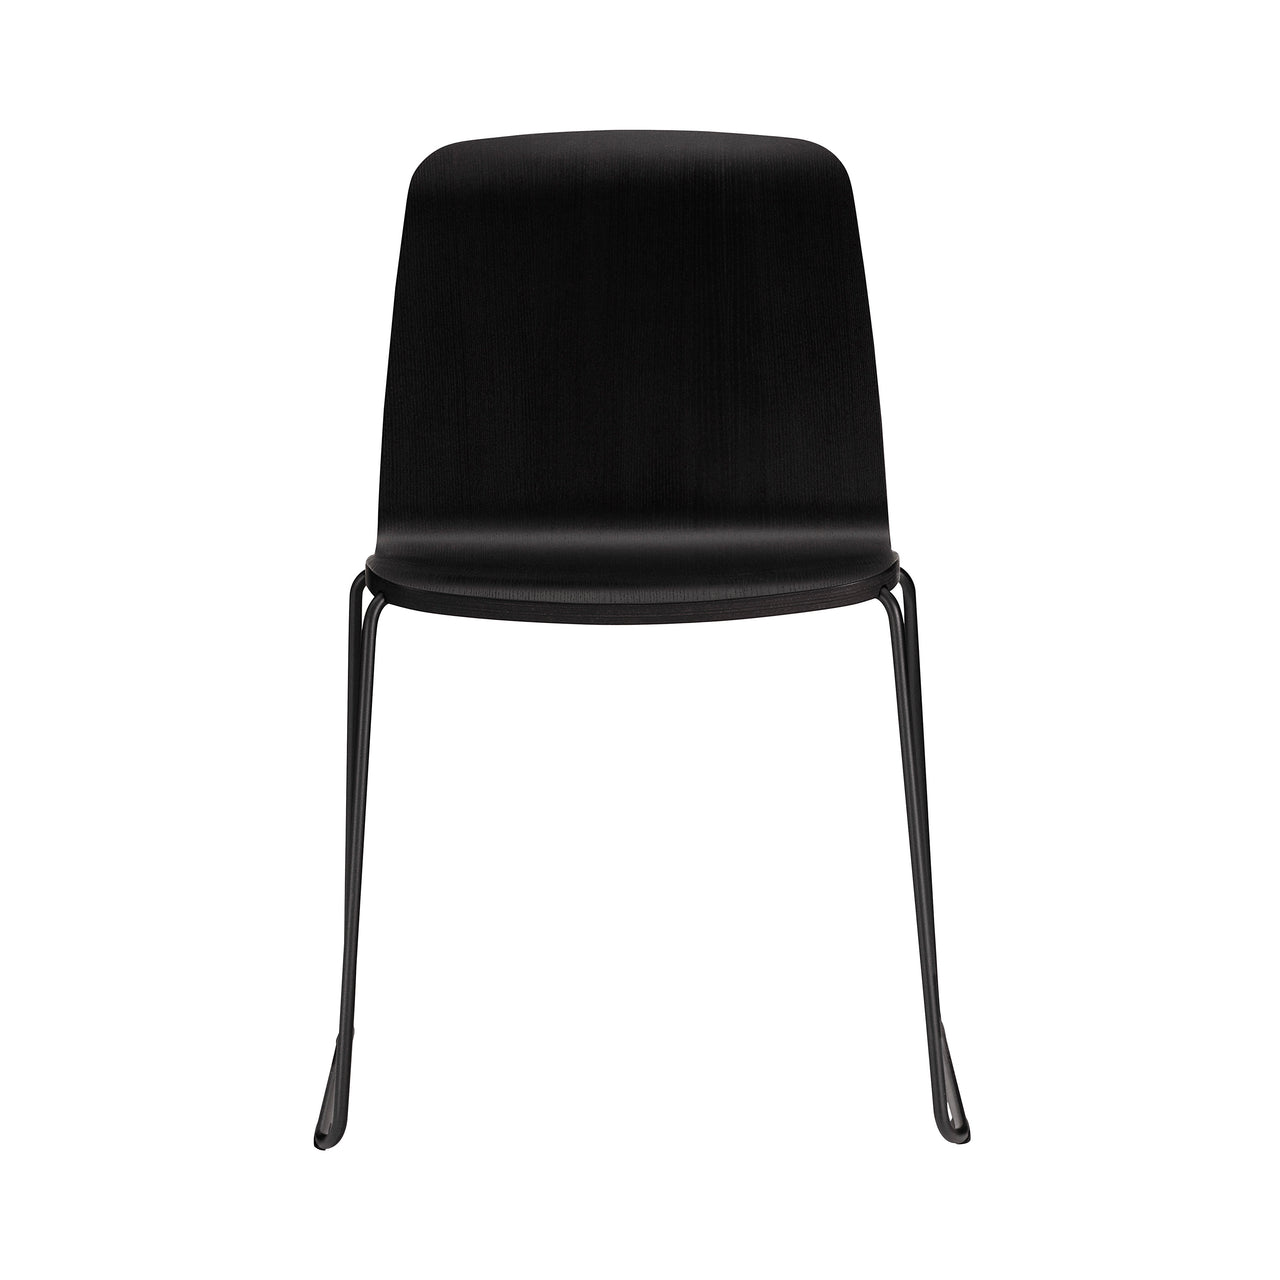 Just Chair: Metal Base + Black + Black